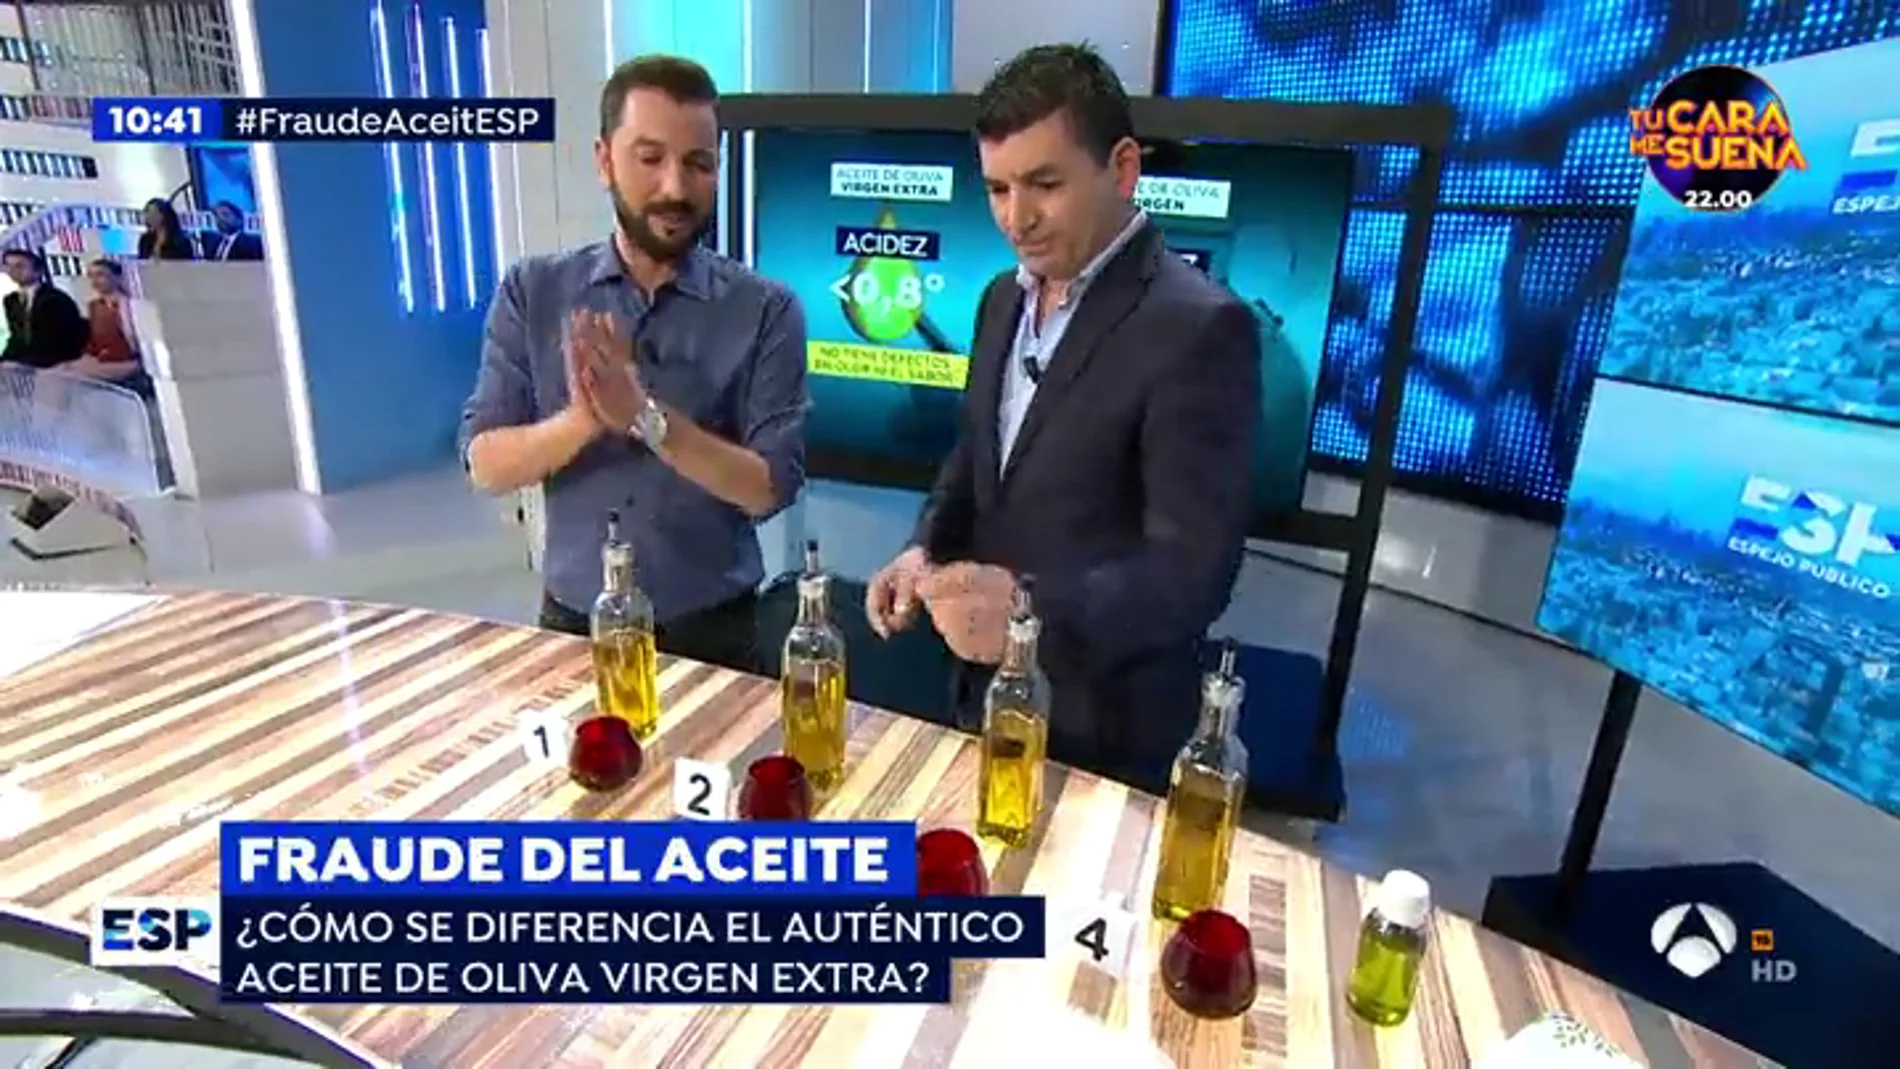 ¿El etiquetado del Aceite de Oliva Virgen Extra es auténtico?